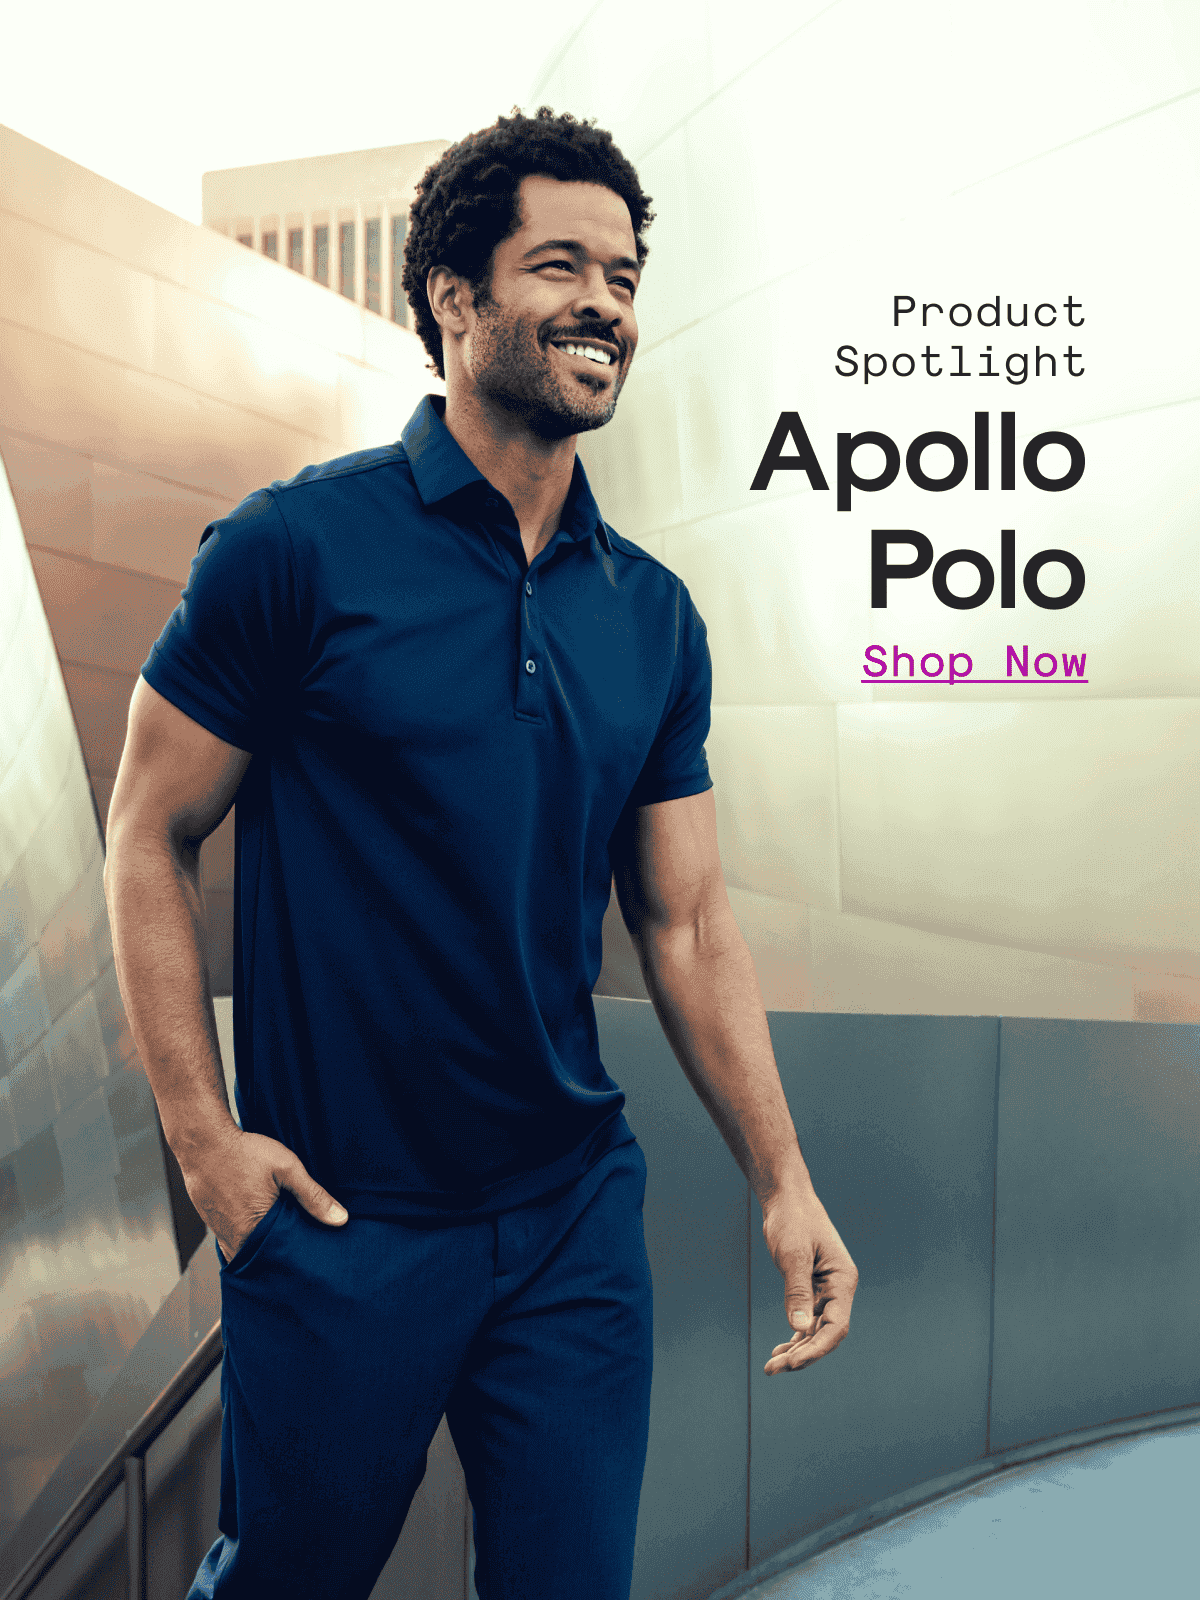 Product Spotlight: Apollo Polo